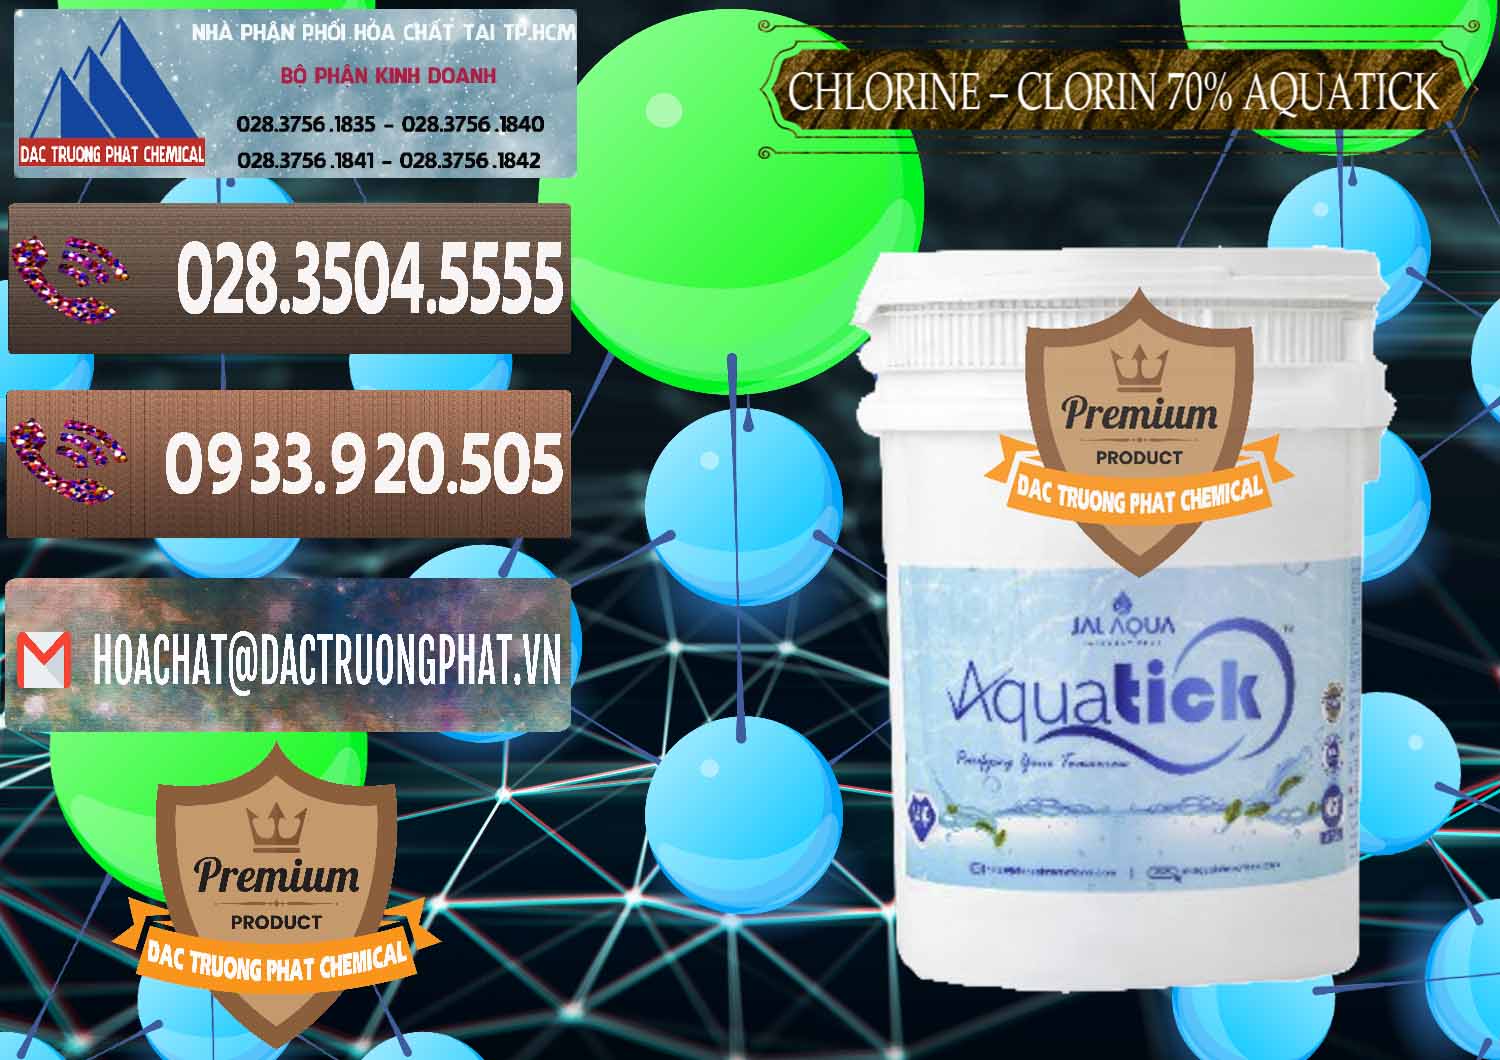 Nơi bán và phân phối Chlorine – Clorin 70% Aquatick Thùng Cao Jal Aqua Ấn Độ India - 0237 - Chuyên cung cấp _ nhập khẩu hóa chất tại TP.HCM - hoachatviet.net